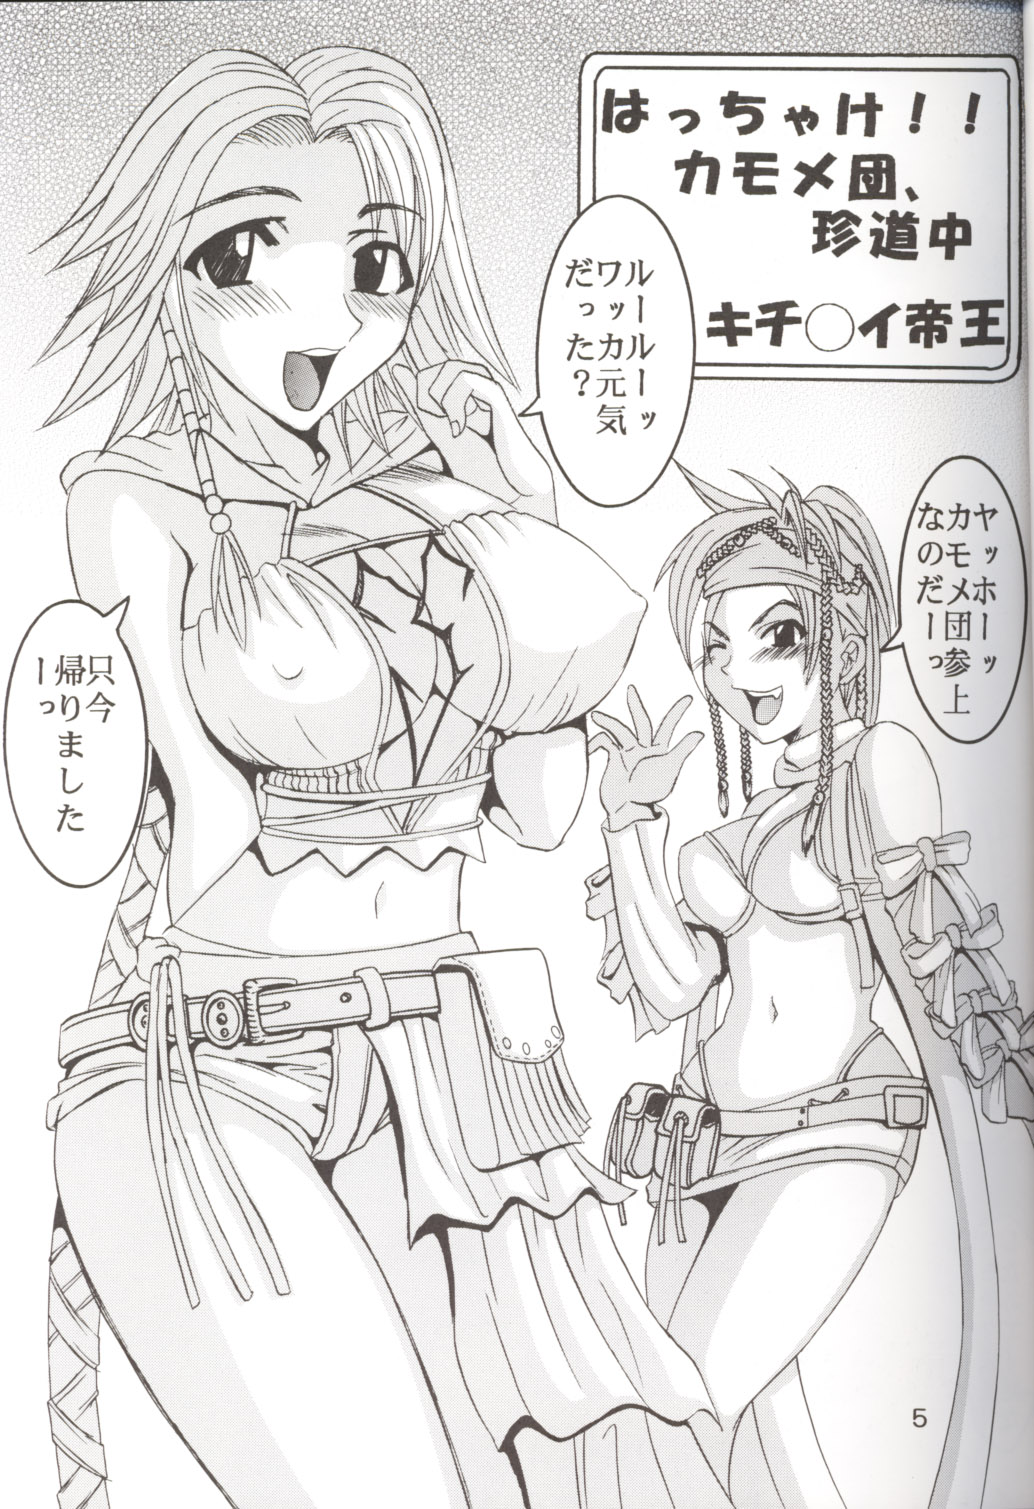 [St. Rio] Yuna a la Mode 5 (Final Fantasy X) page 6 full